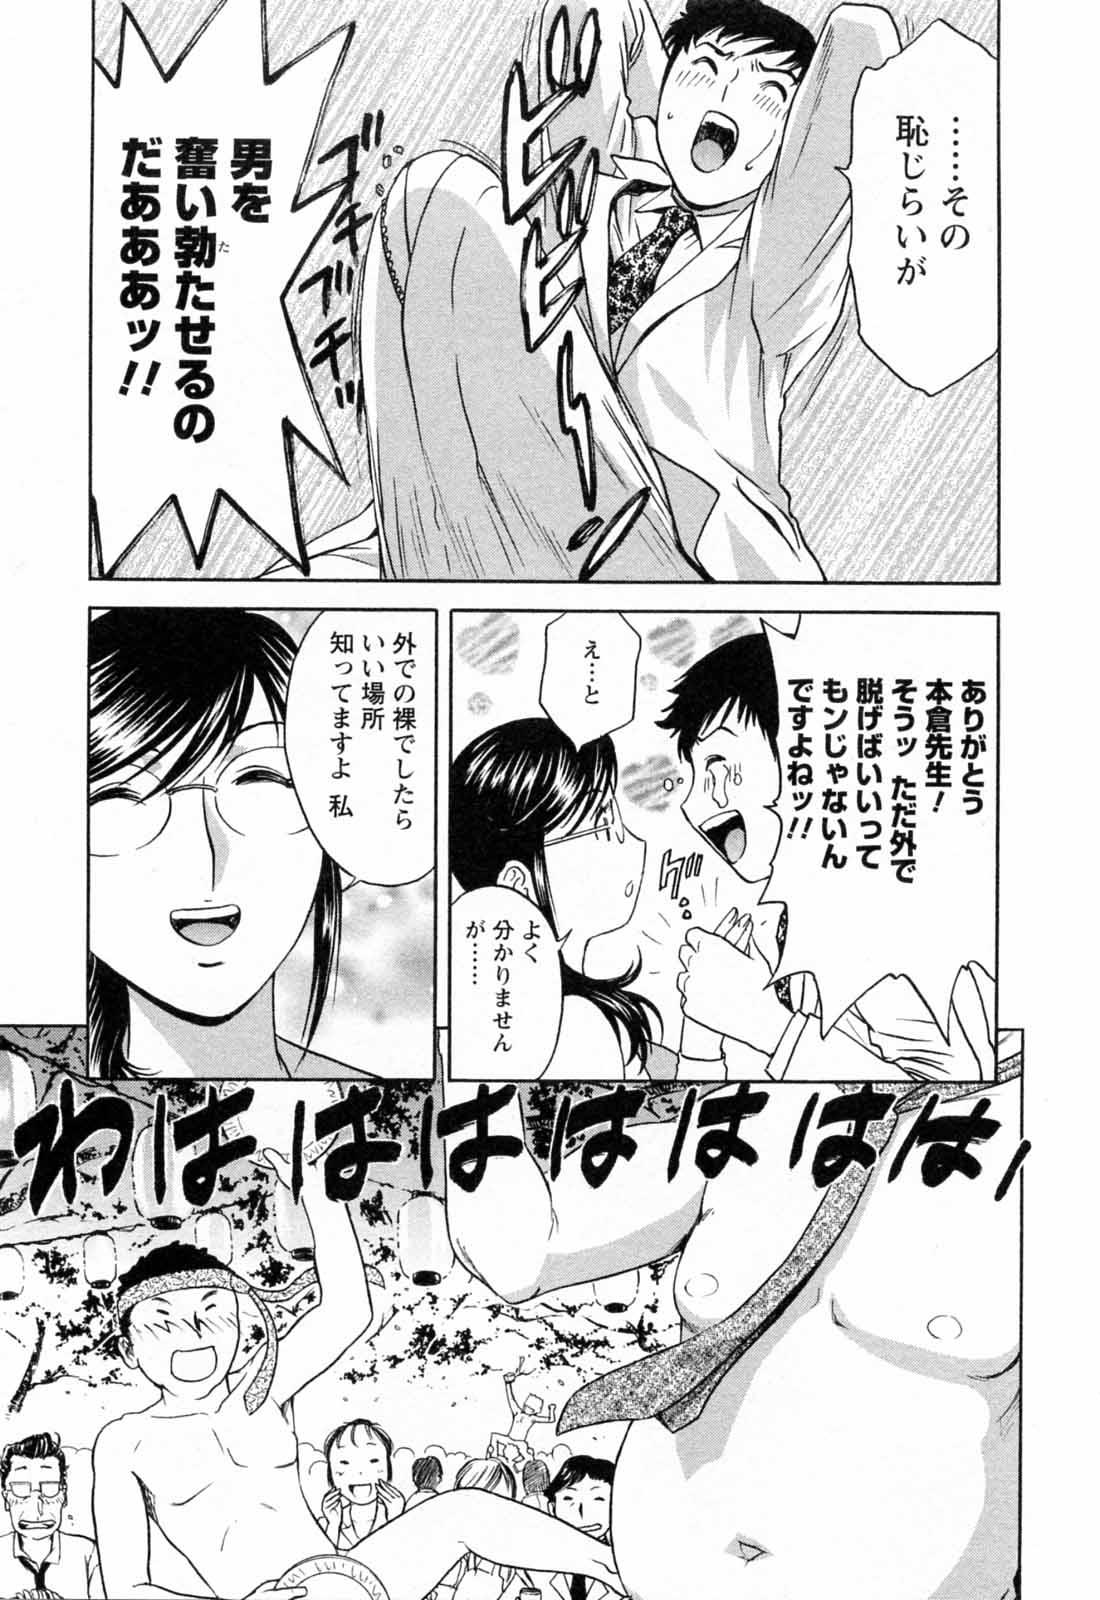 [Hidemaru] Mo-Retsu! Boin Sensei (Boing Boing Teacher) Vol.5 58